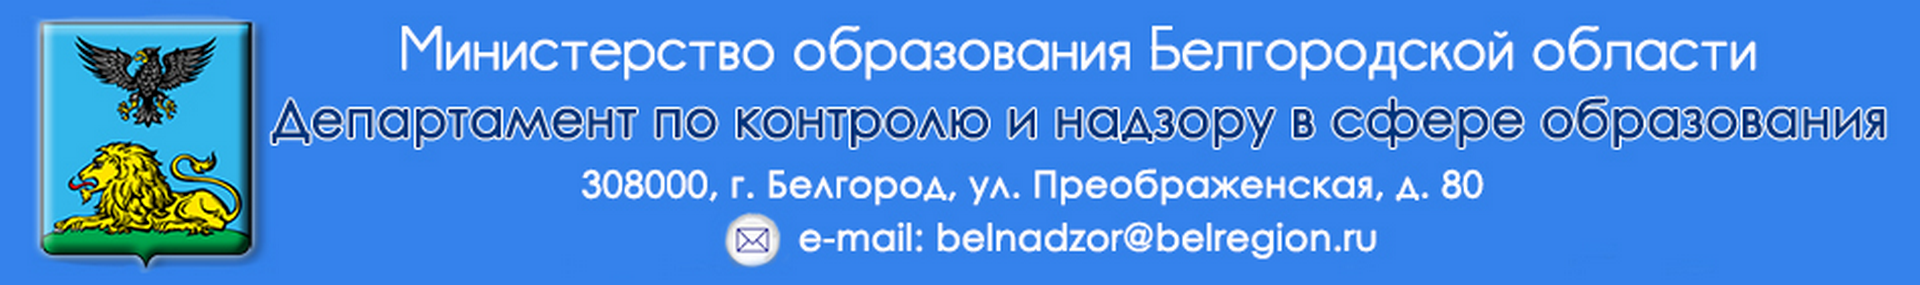 Официальный сайт министерства образования Белгородской области